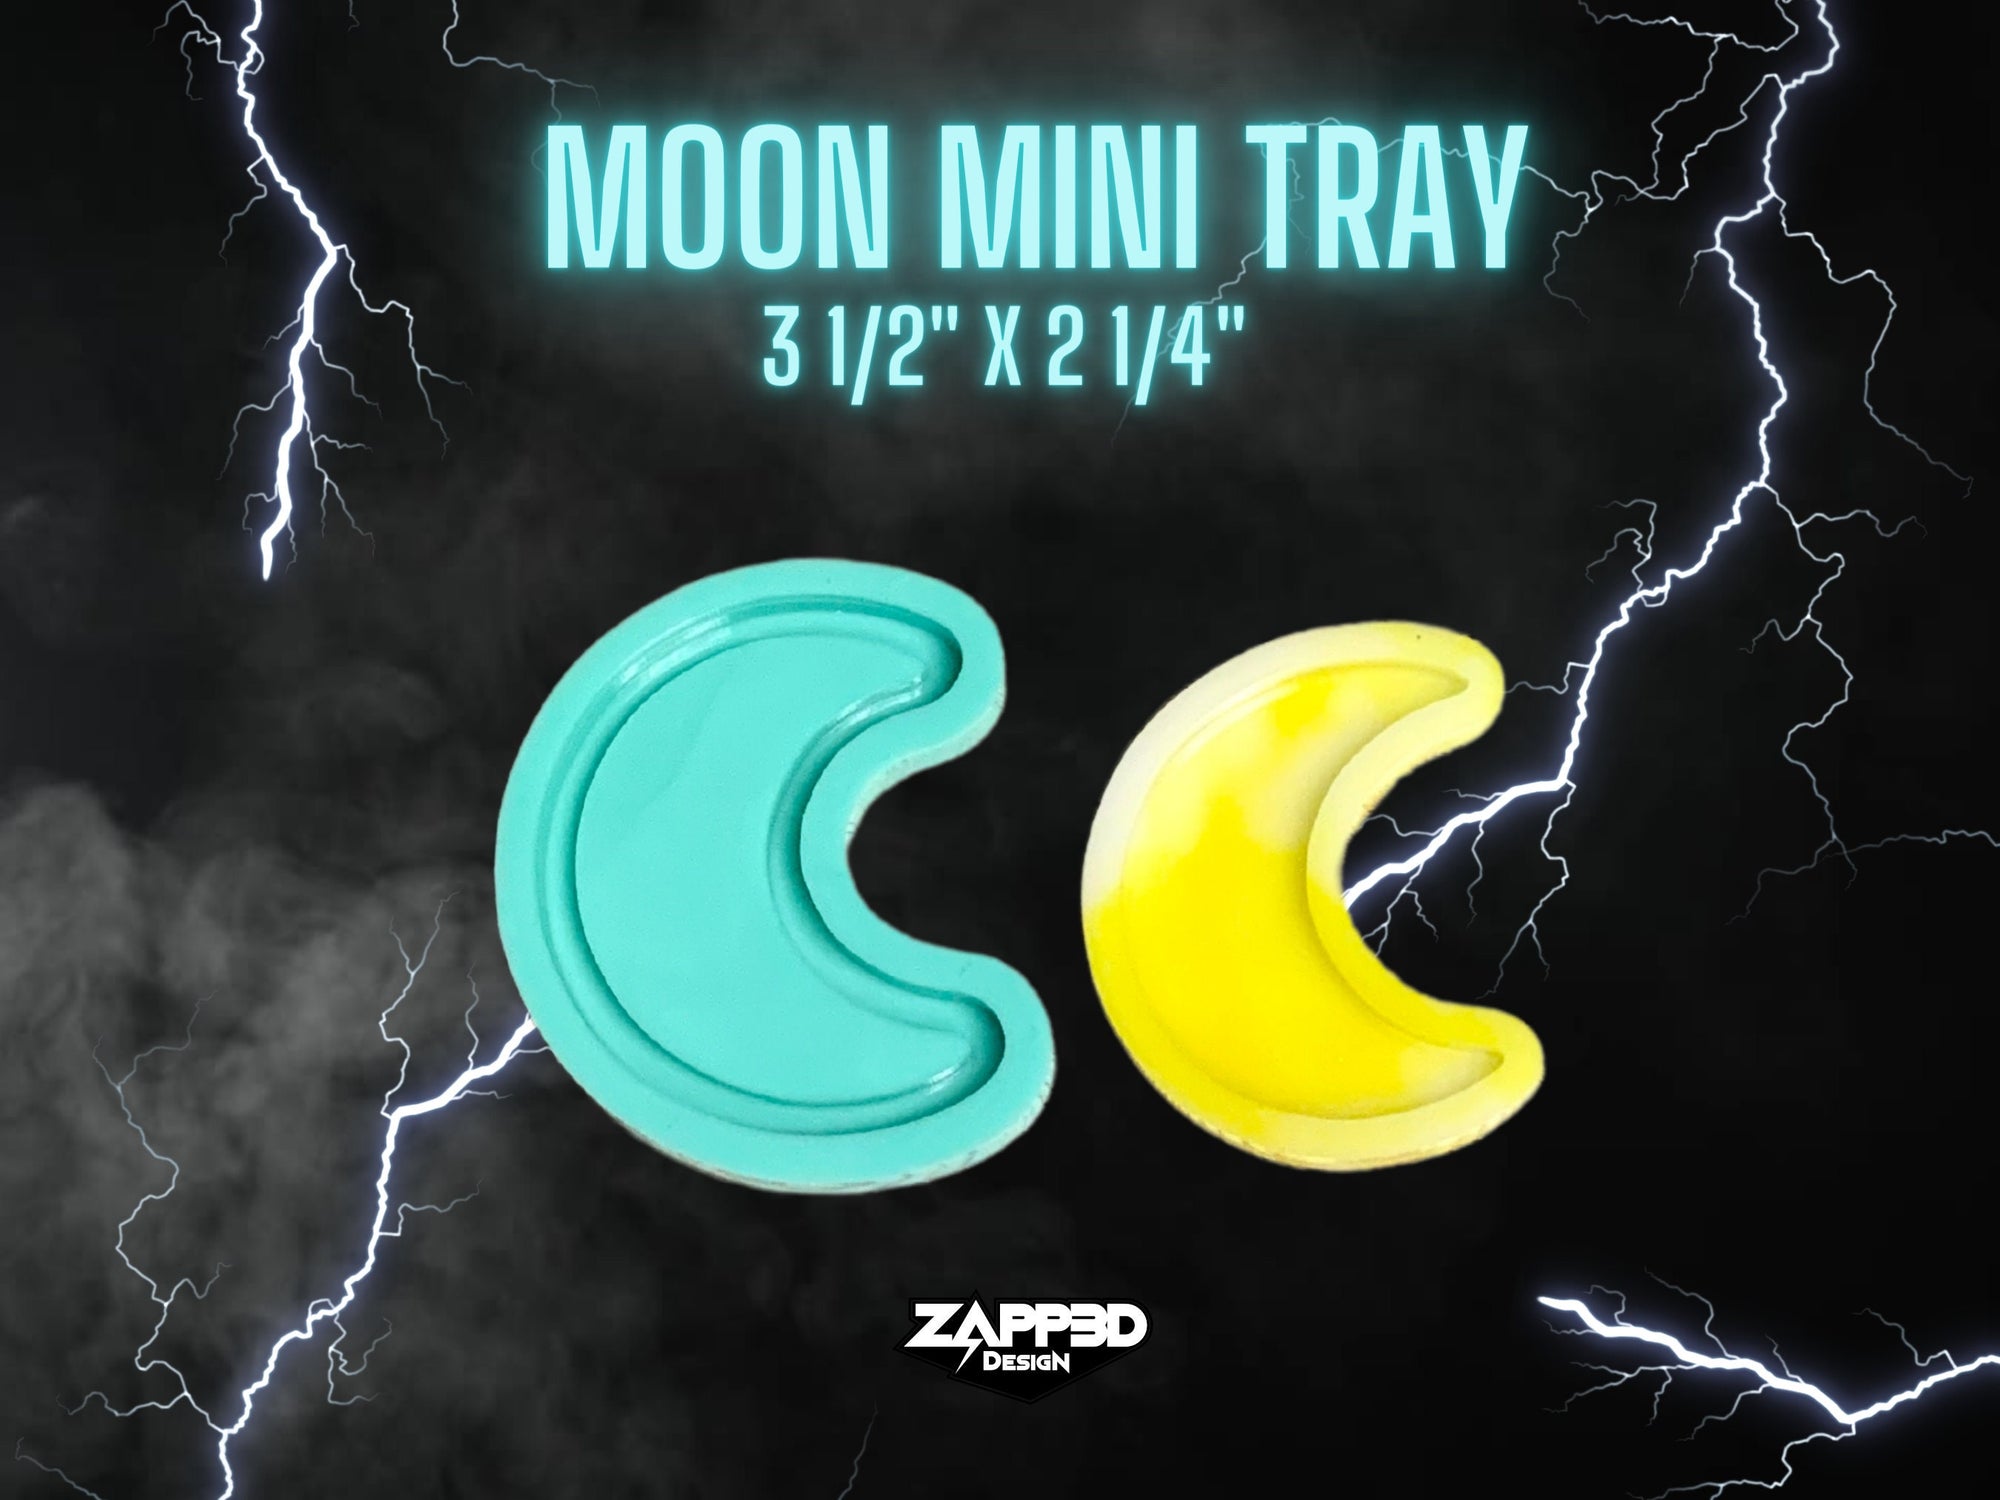 Moon Mini Tray Molds, Small Tray Mold, Resin Mini Tray Mold, Shaker Mold, Moon Mold, Tray Mold